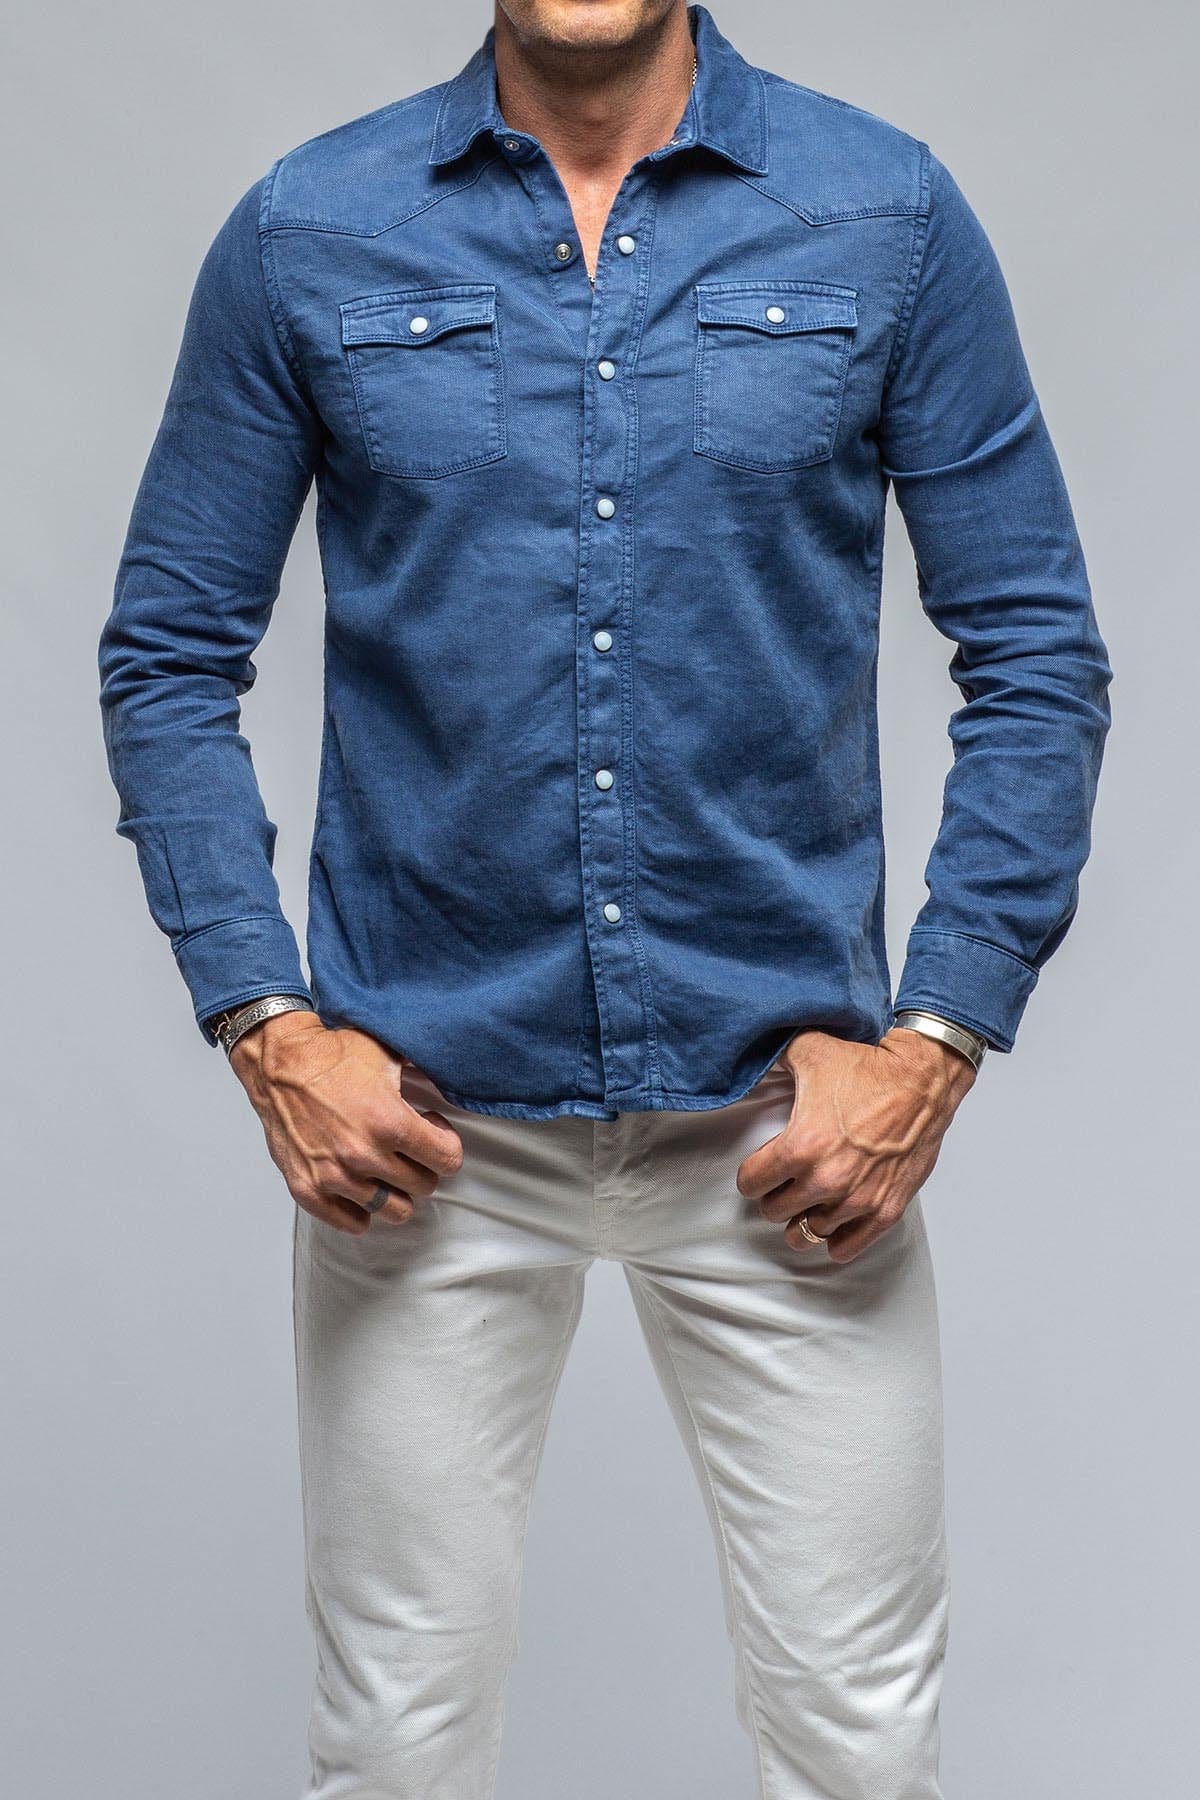 Numero Uno Pure Cotton Light Blue Denim Rugged Shirt | NMSHFA2087-BLUE DENIM  | Cilory.com